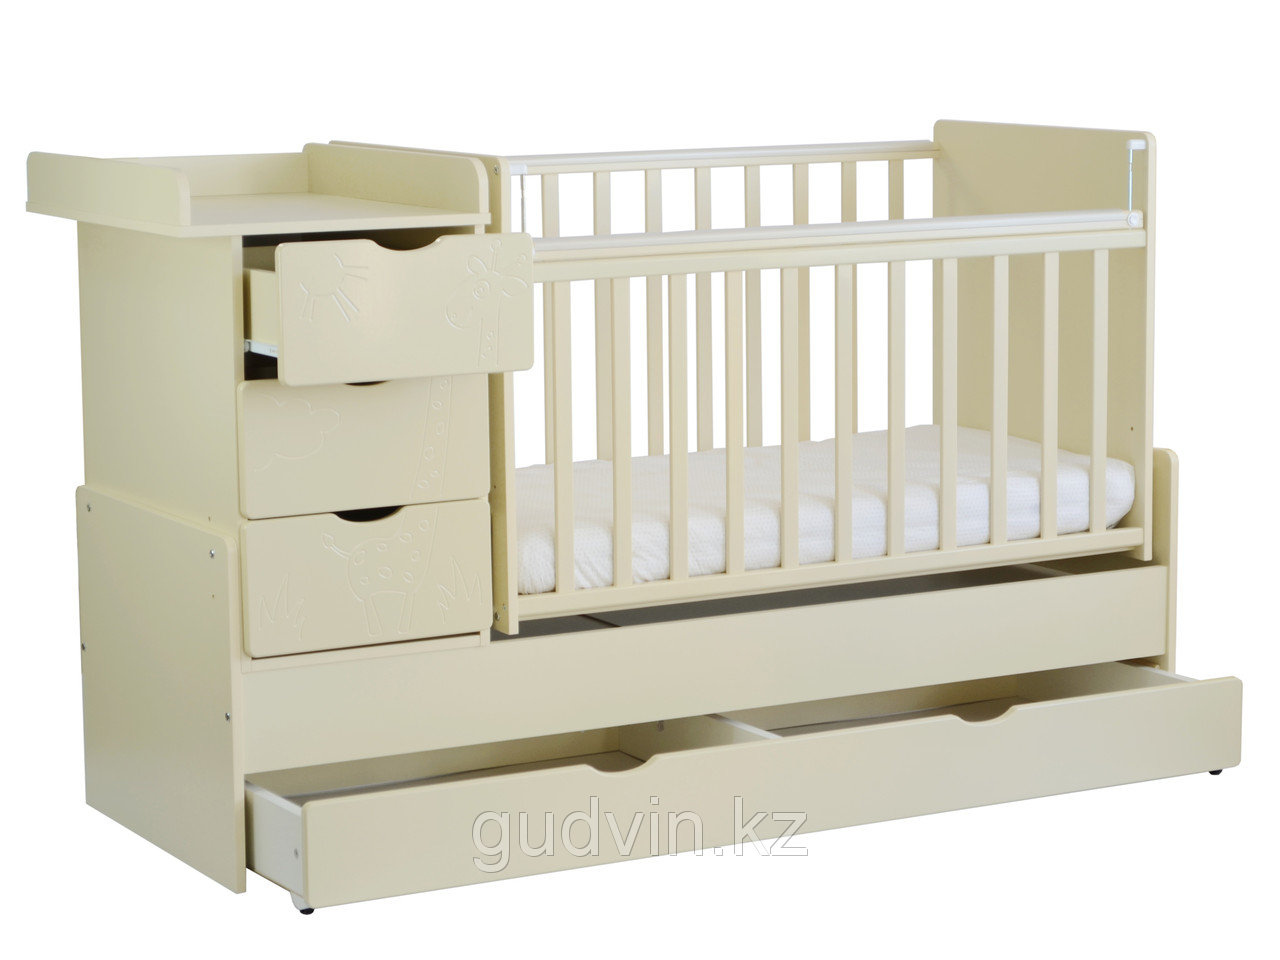 Comfortable crib